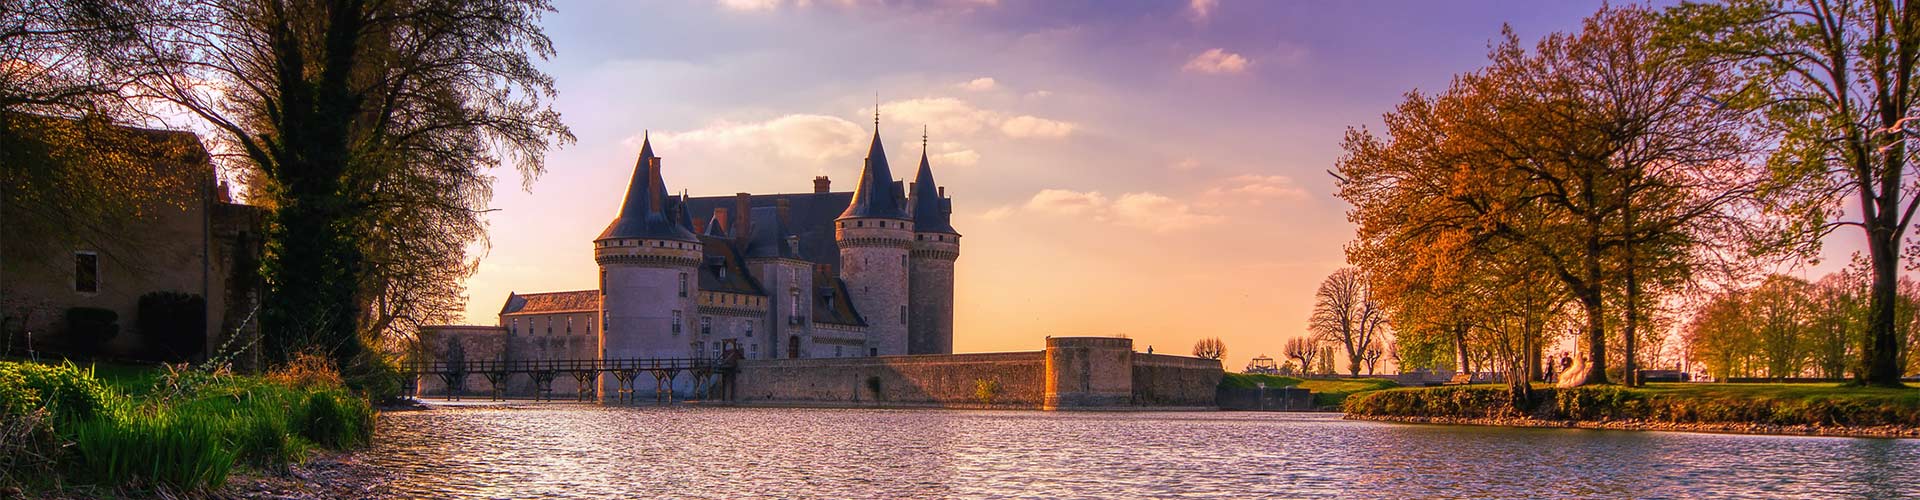 Château de Sully-sur-Loire au coucher de soleil, Loiret